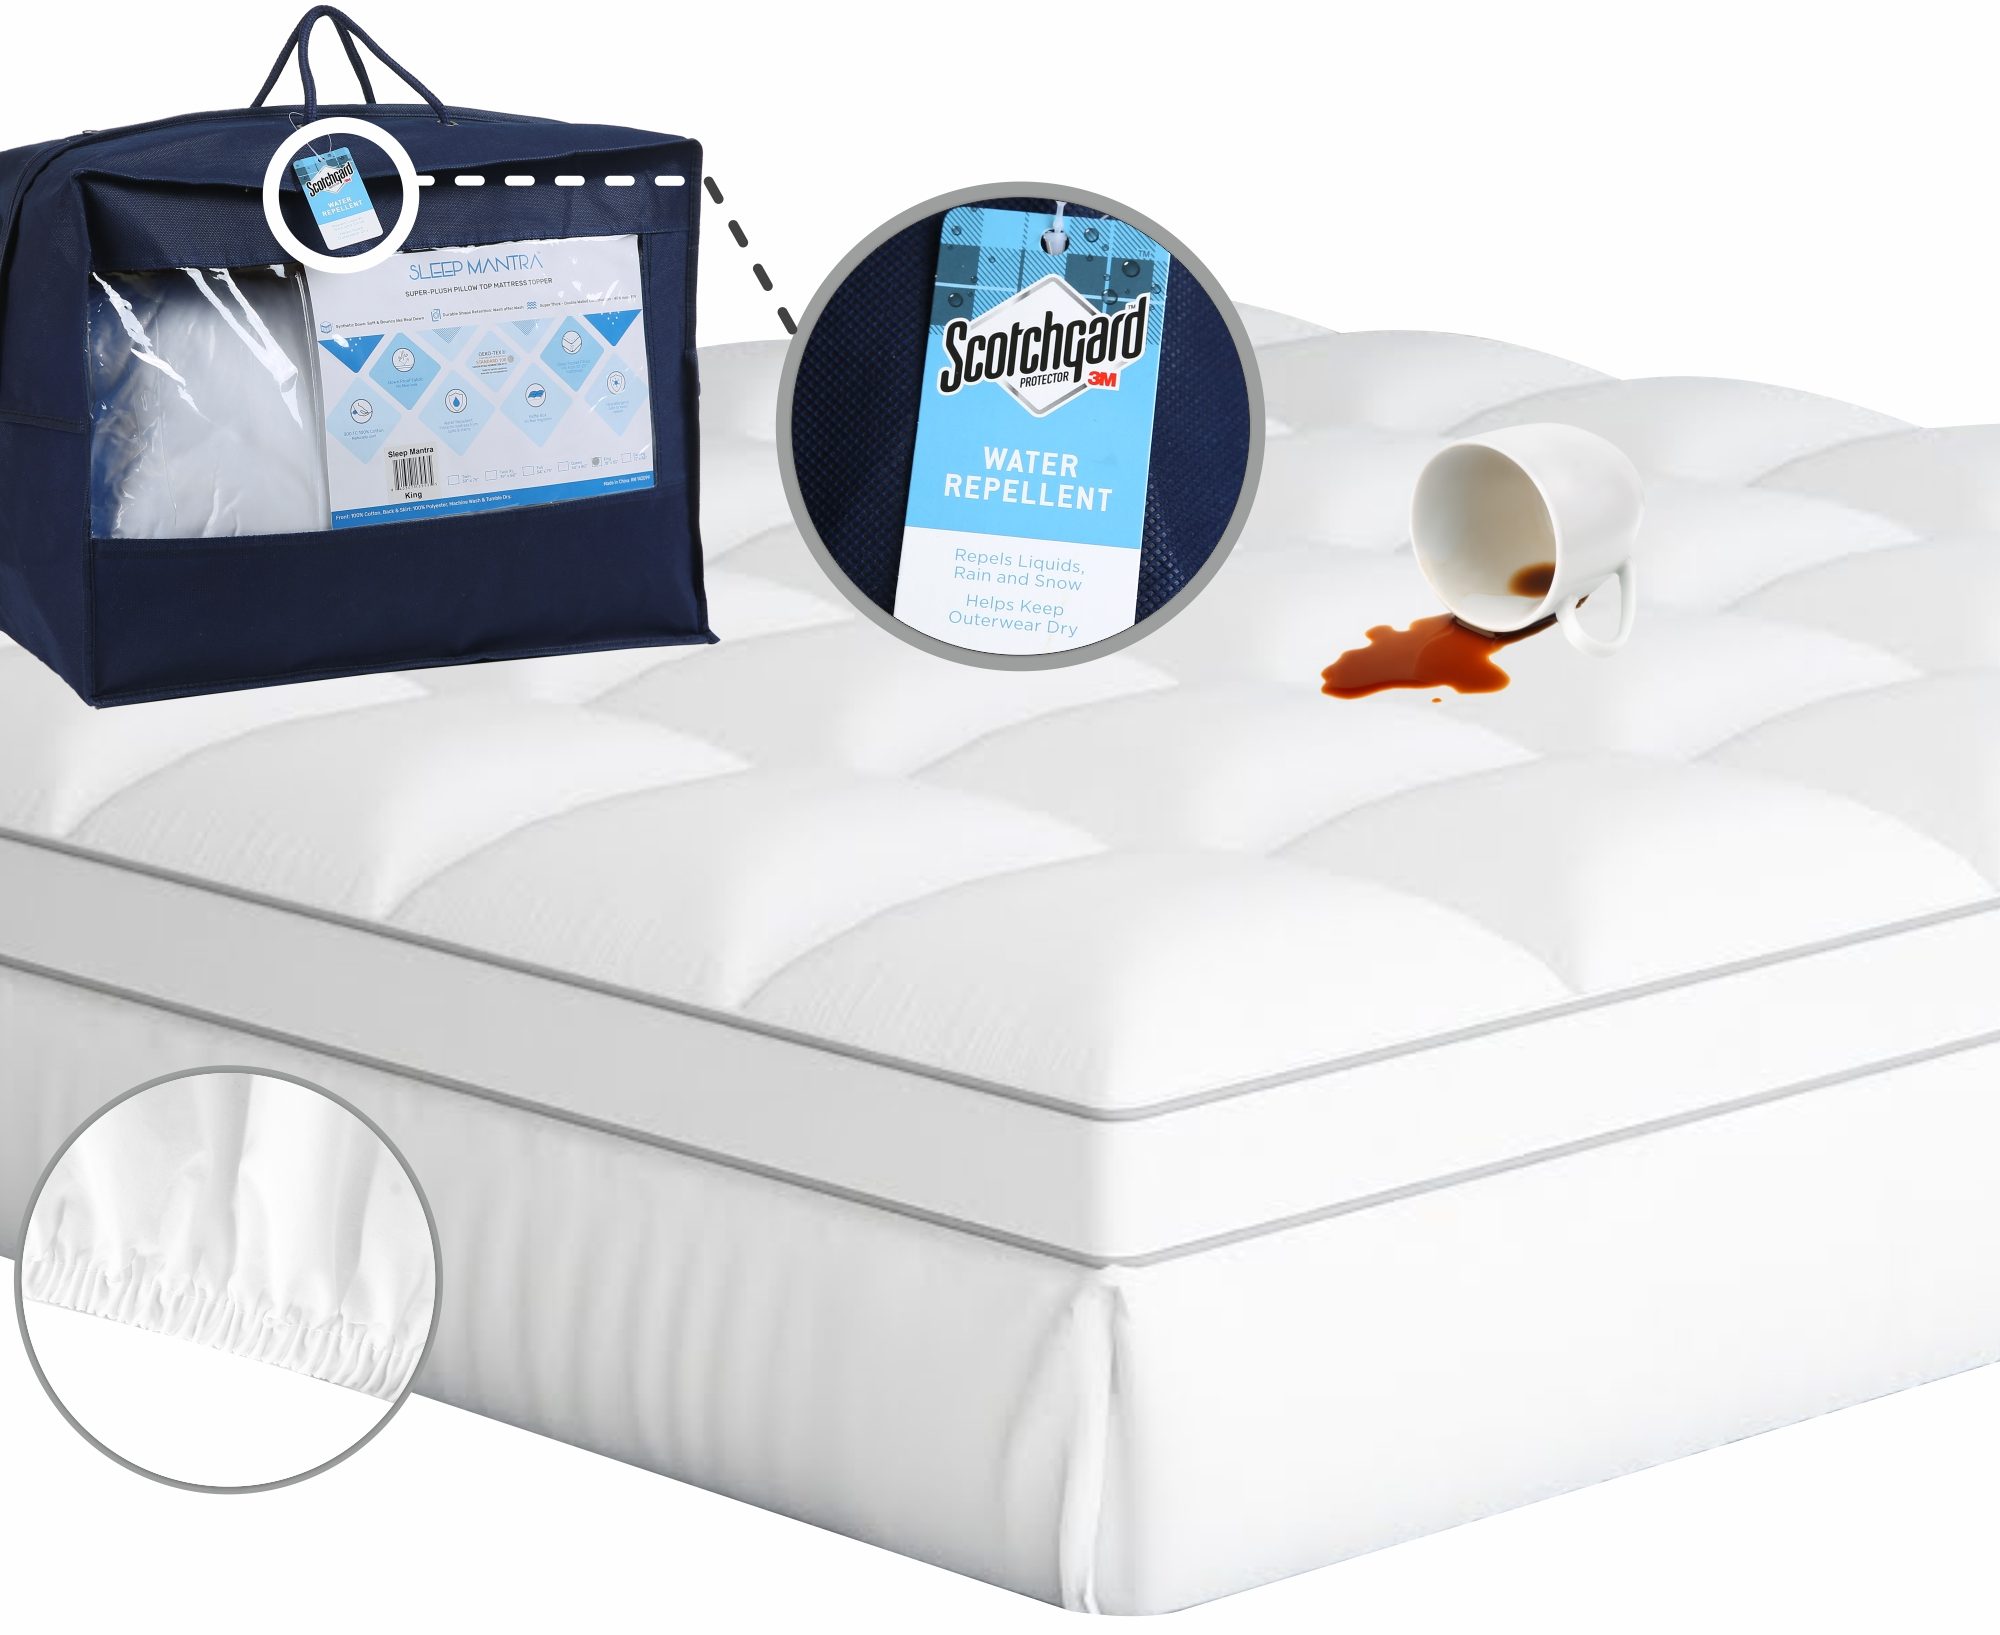 sleep mantra mattress topper 2 pack